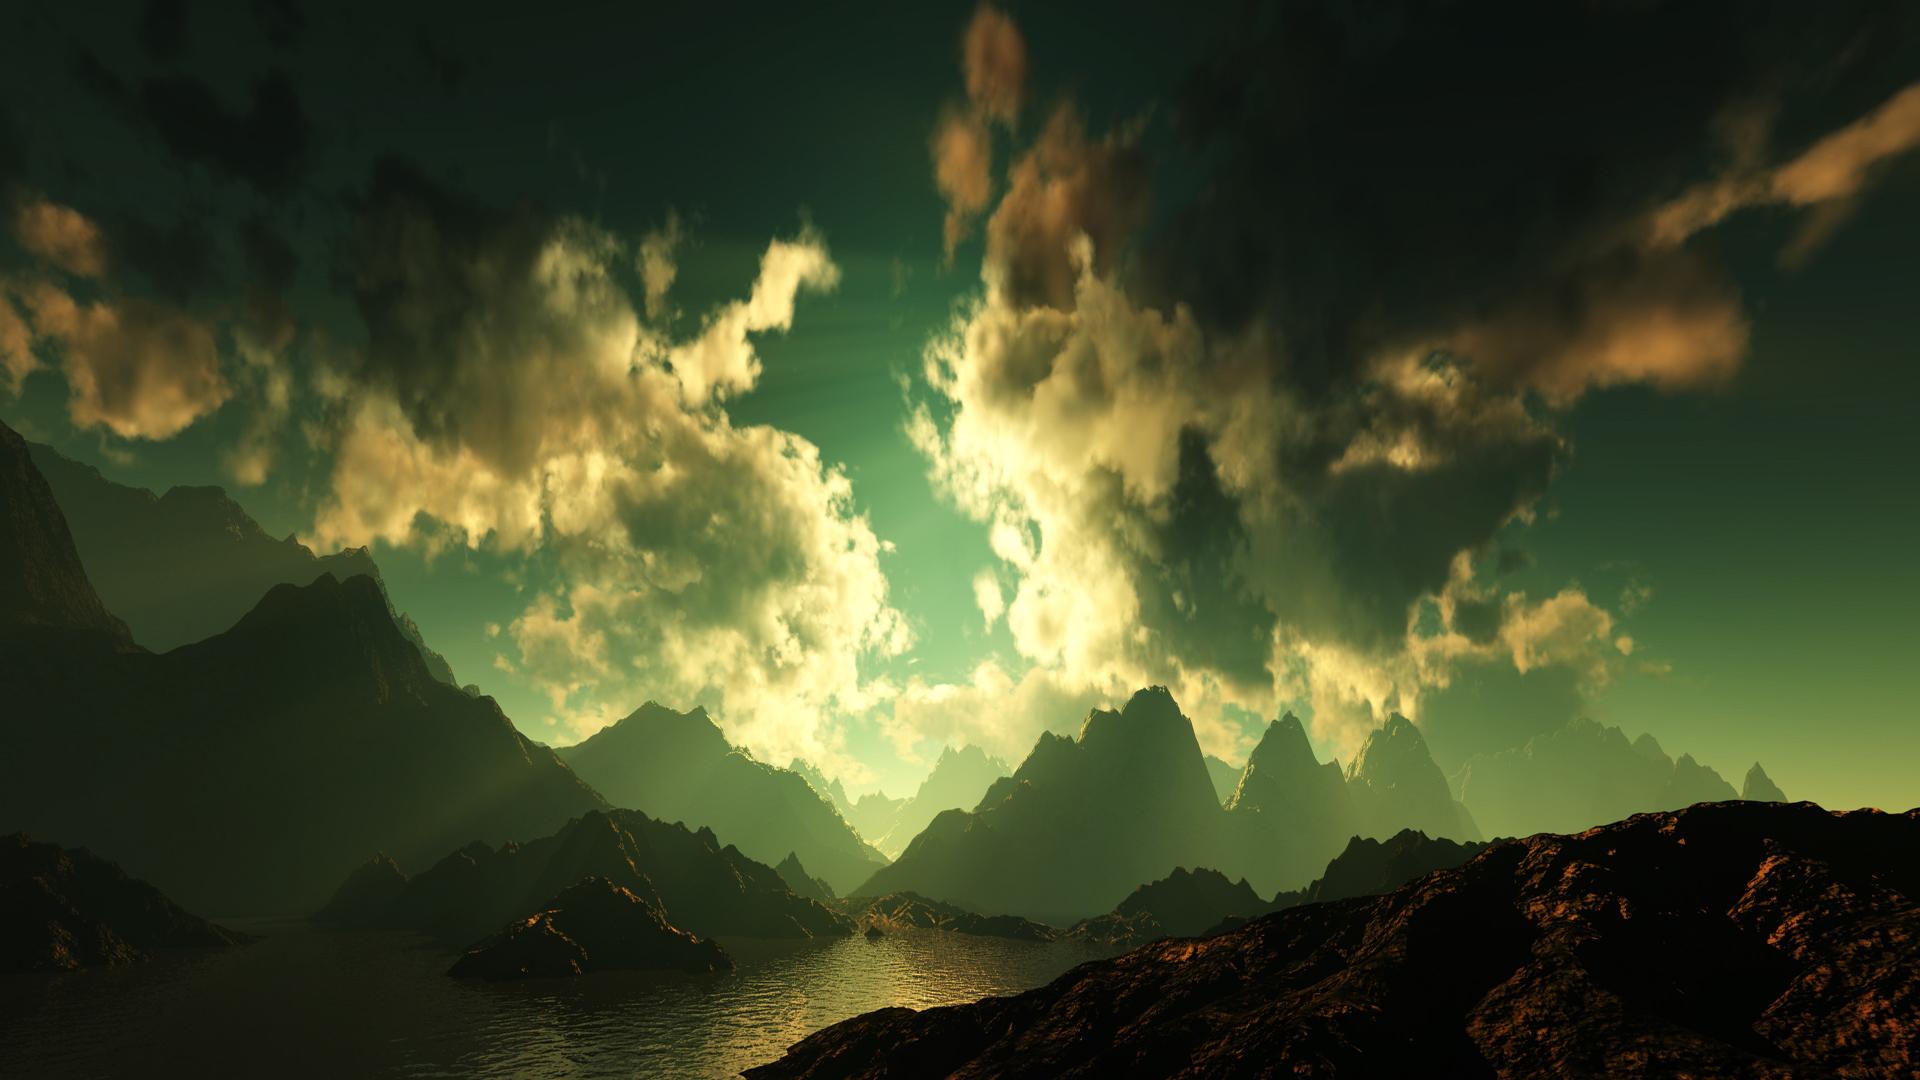 dual screen wallpaper 1920x1080,sky,cloud,nature,green,mountain